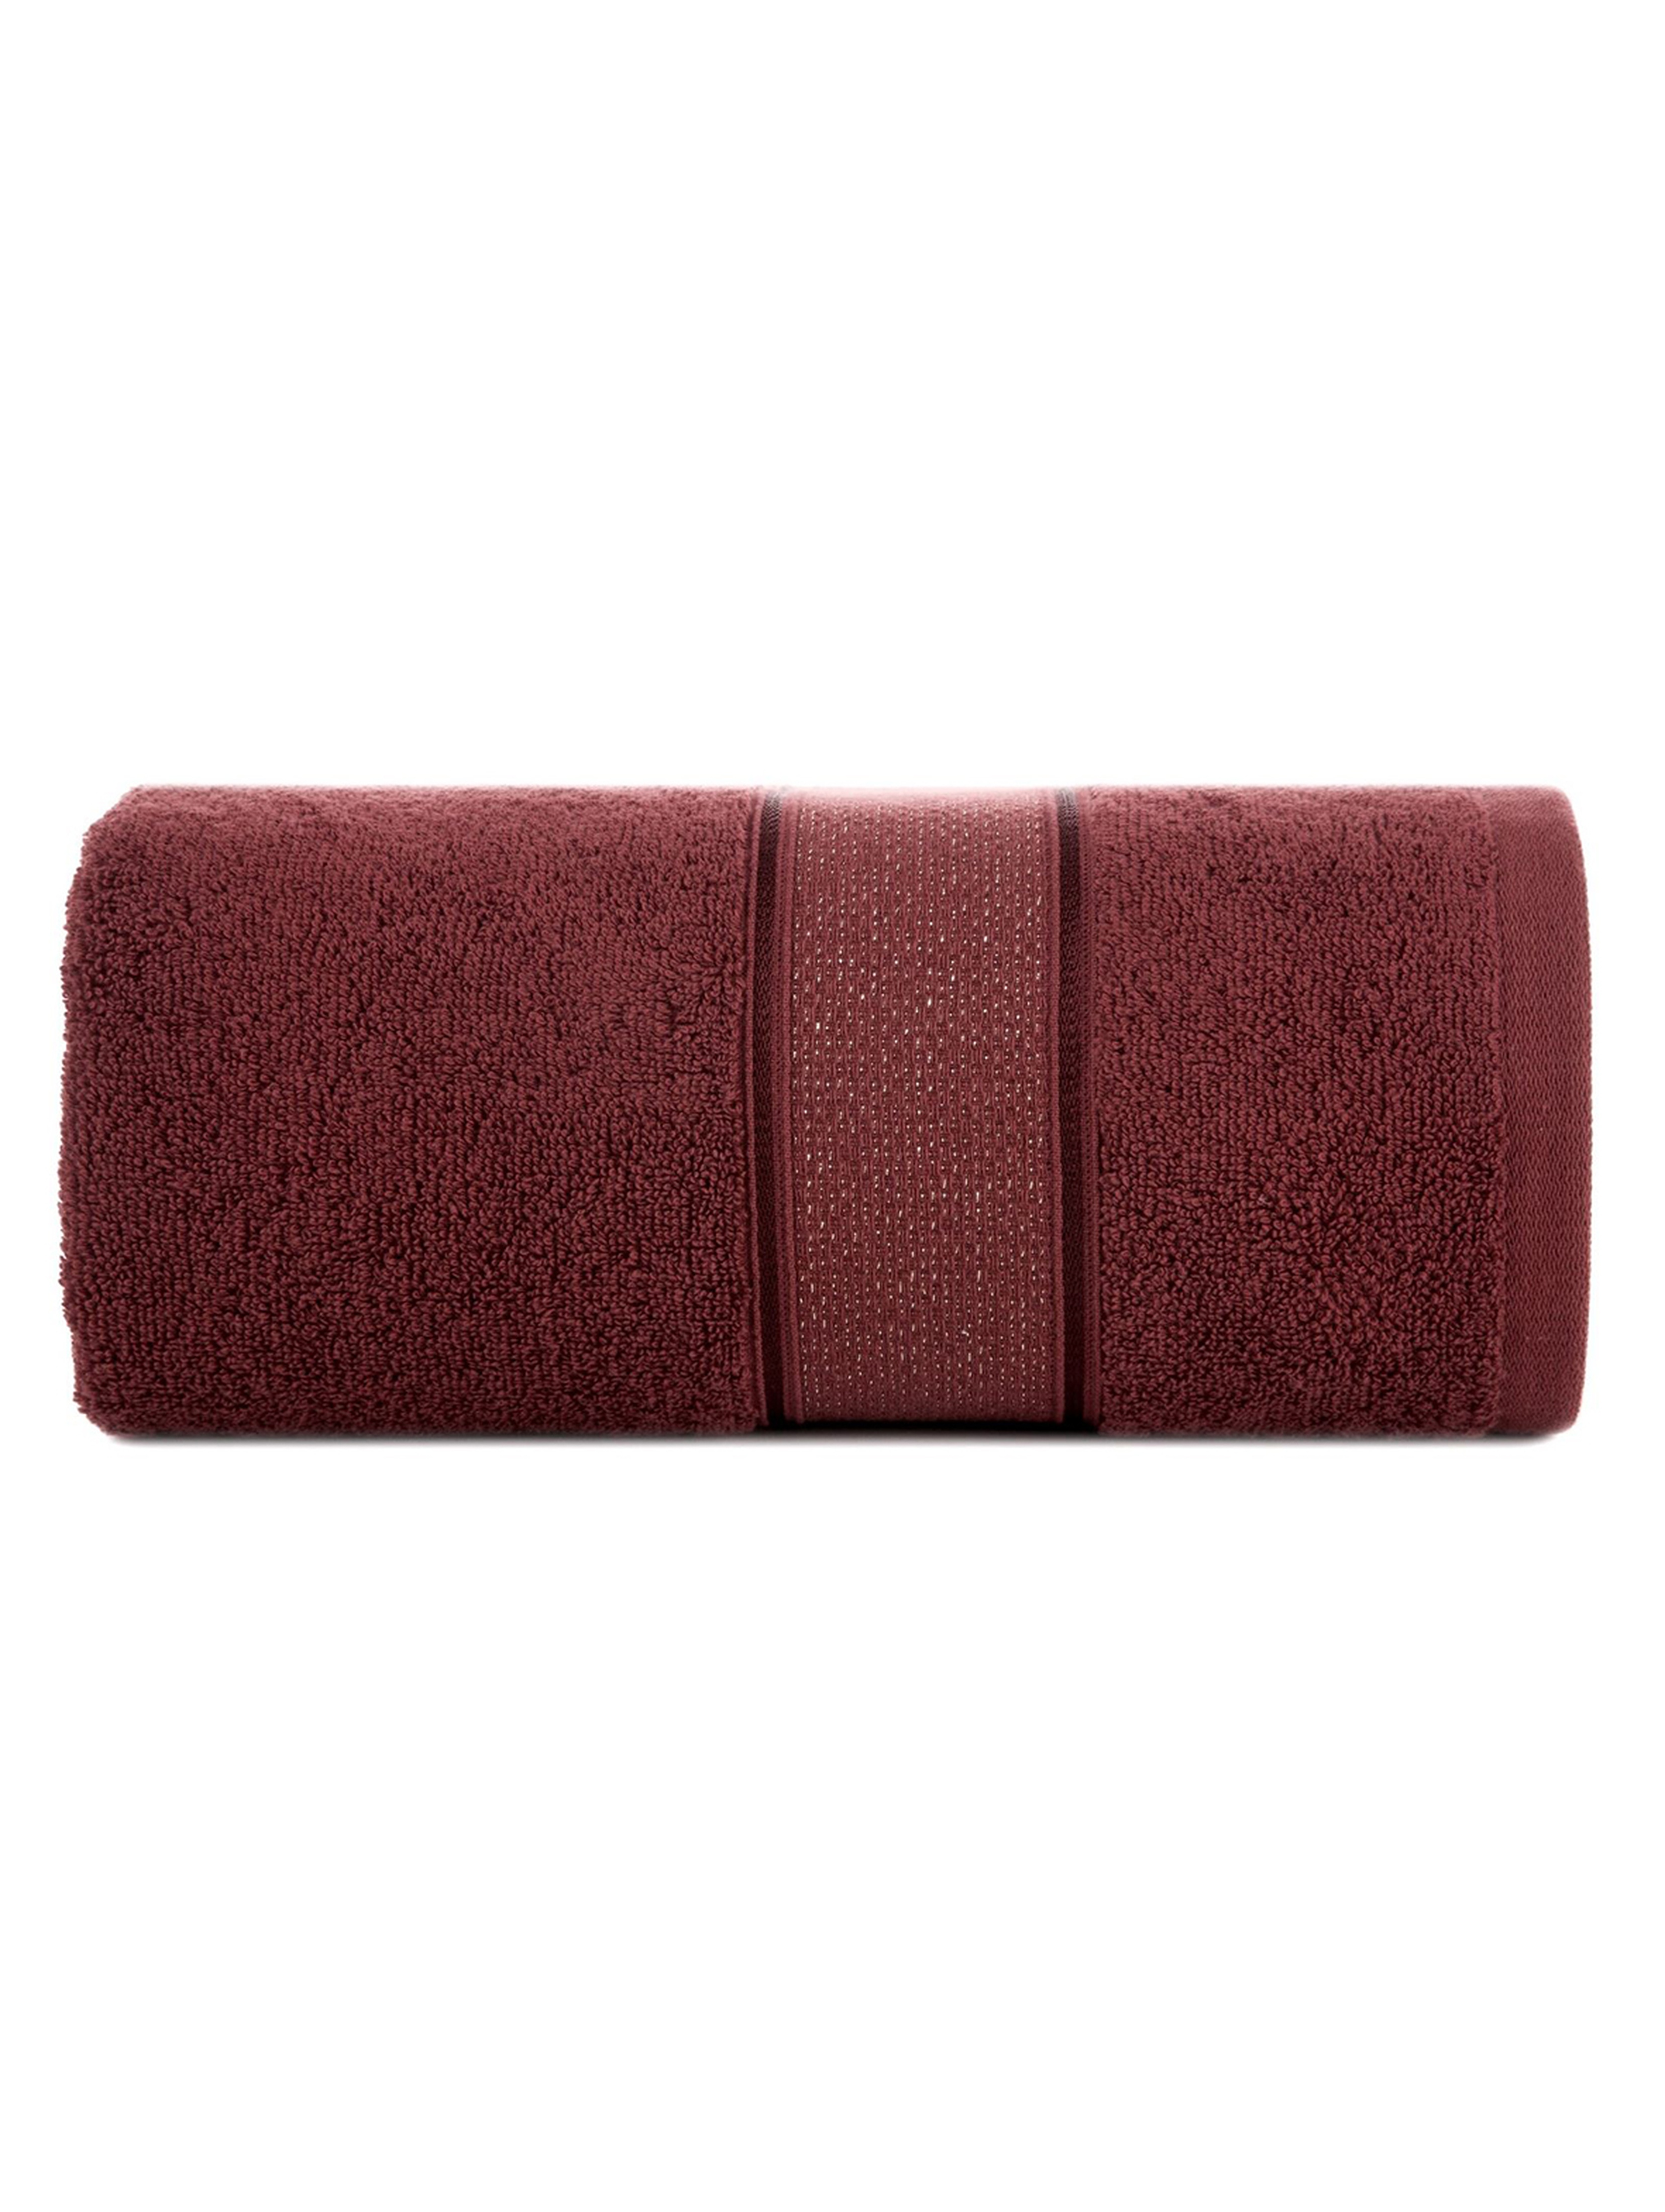 Ręcznik kąpielowy LIANA z bawełny 70x140 cm bordowy